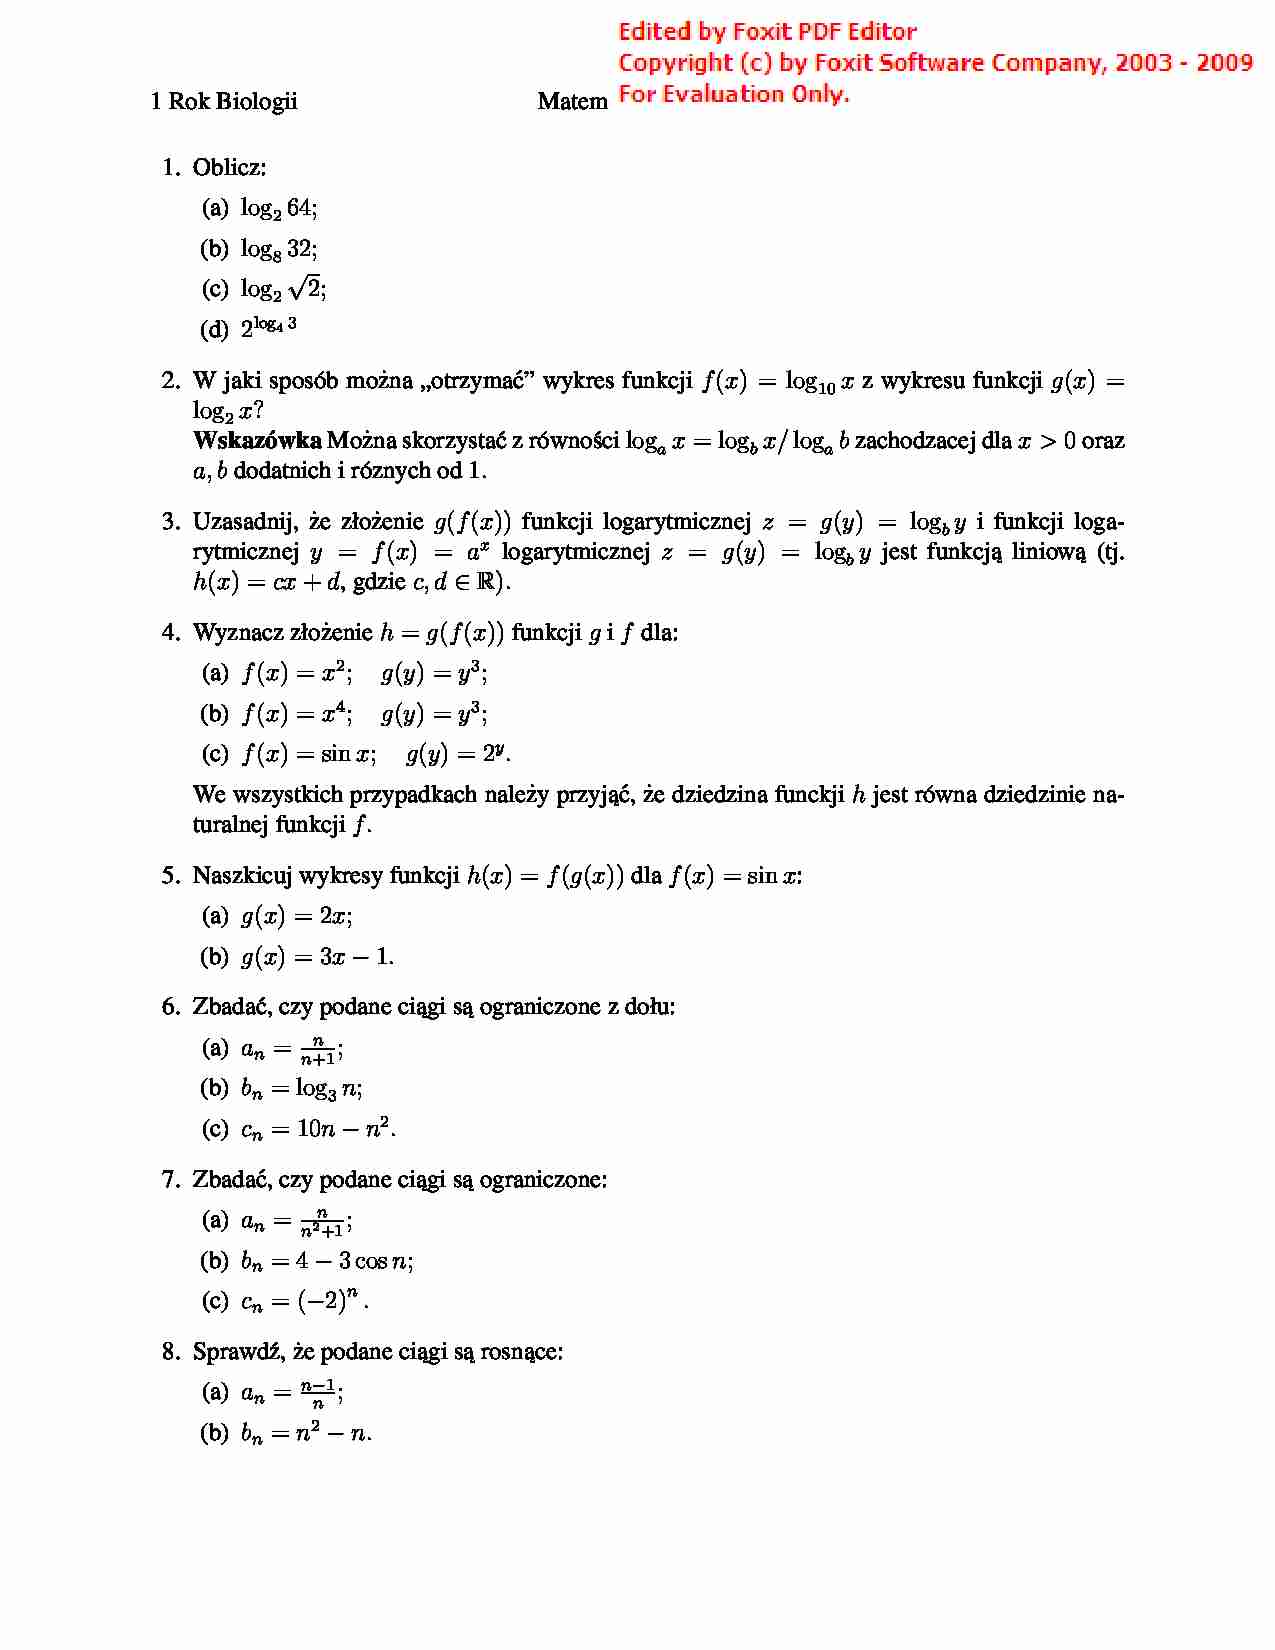 Matematyka - Lista zadań 2 - strona 1